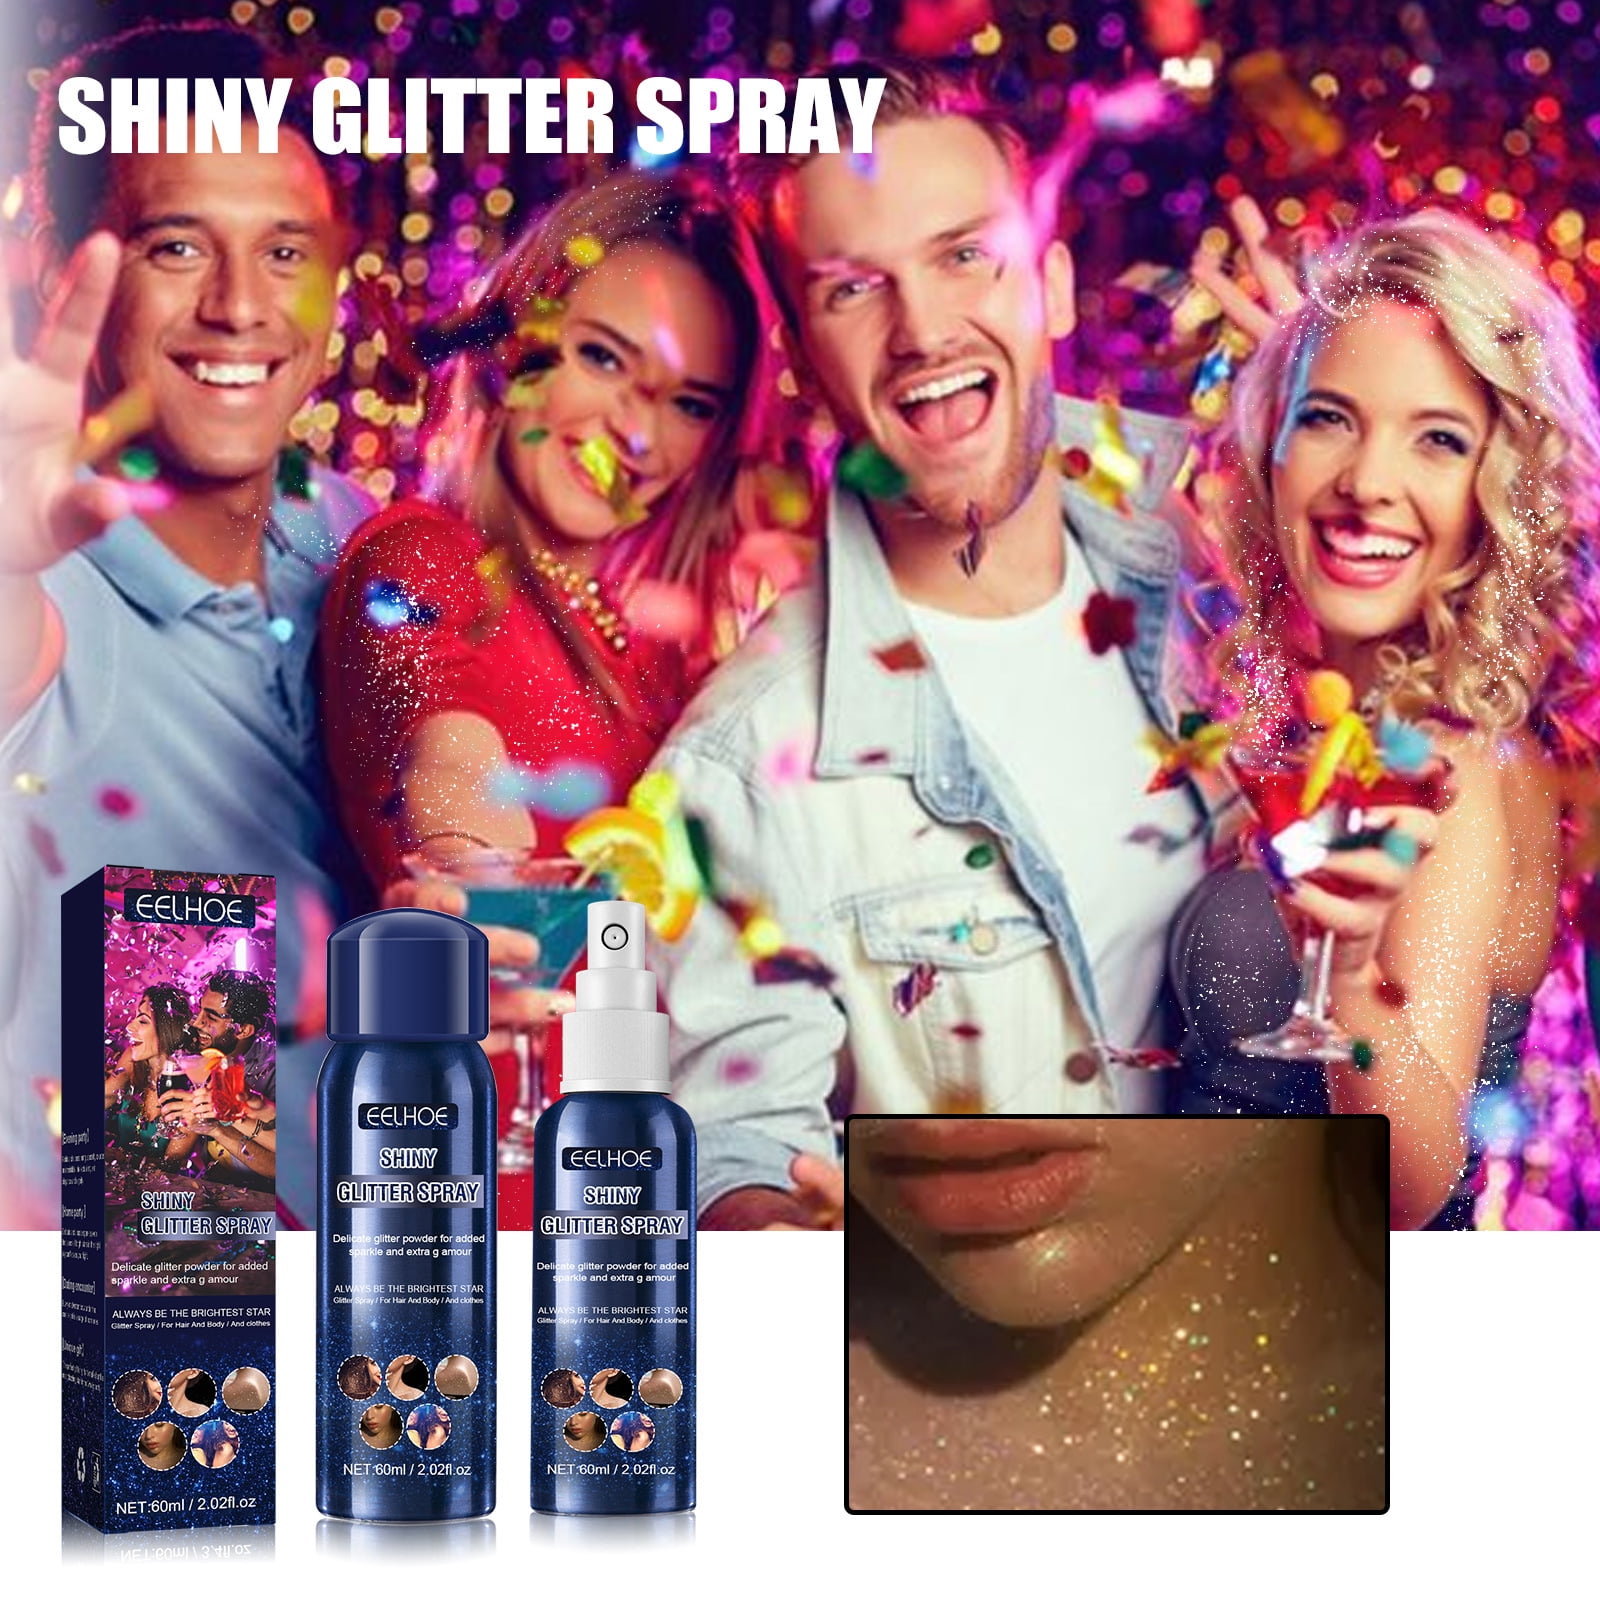 Shiny Glitter Spray Body Glitter Spray, Hair Glitter Spray Glitter